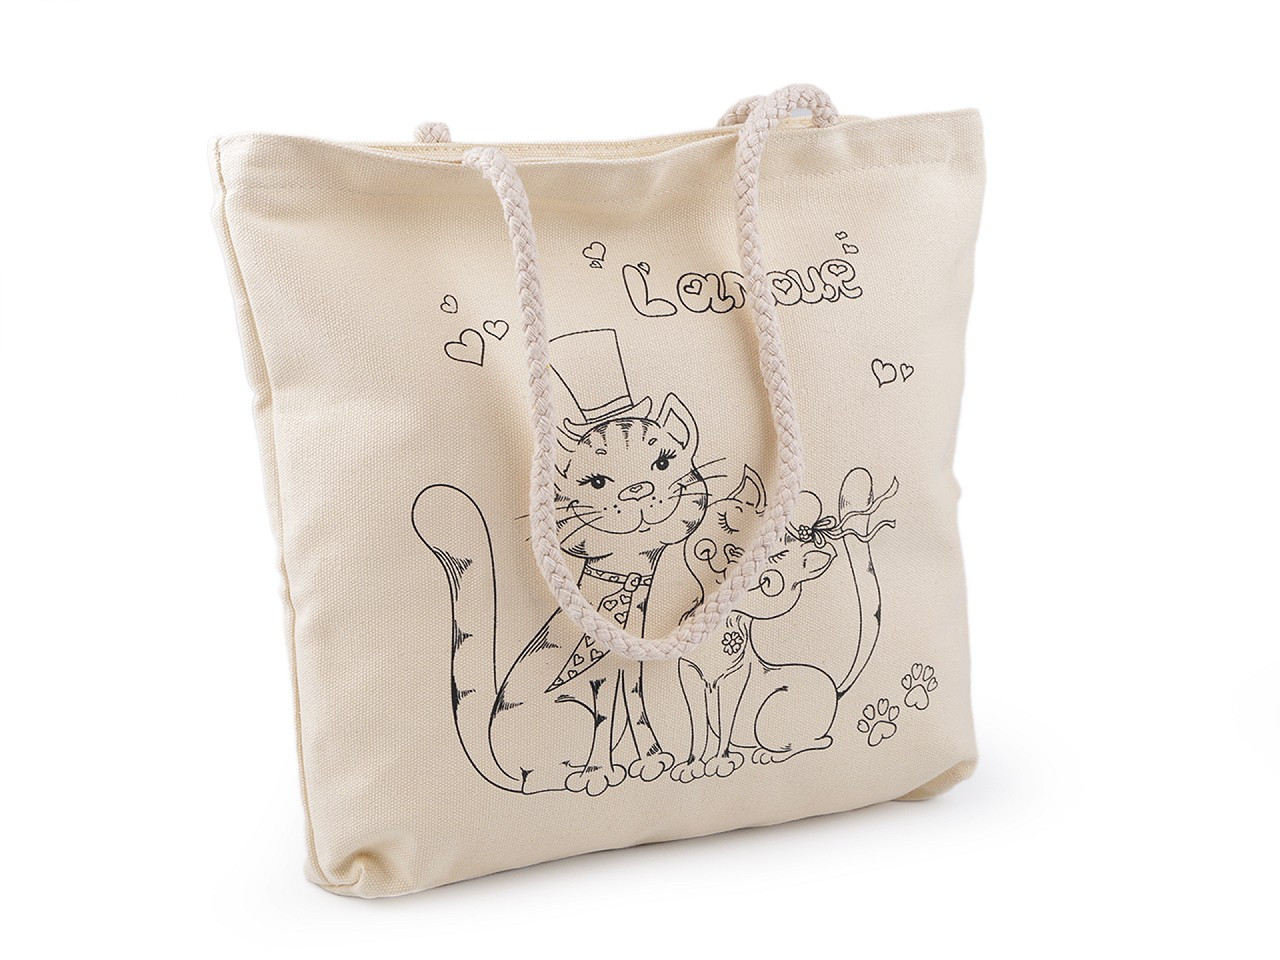 Bavlněná taška k domalování se zipem 34x35 cm, barva 1 režná světlá kočka